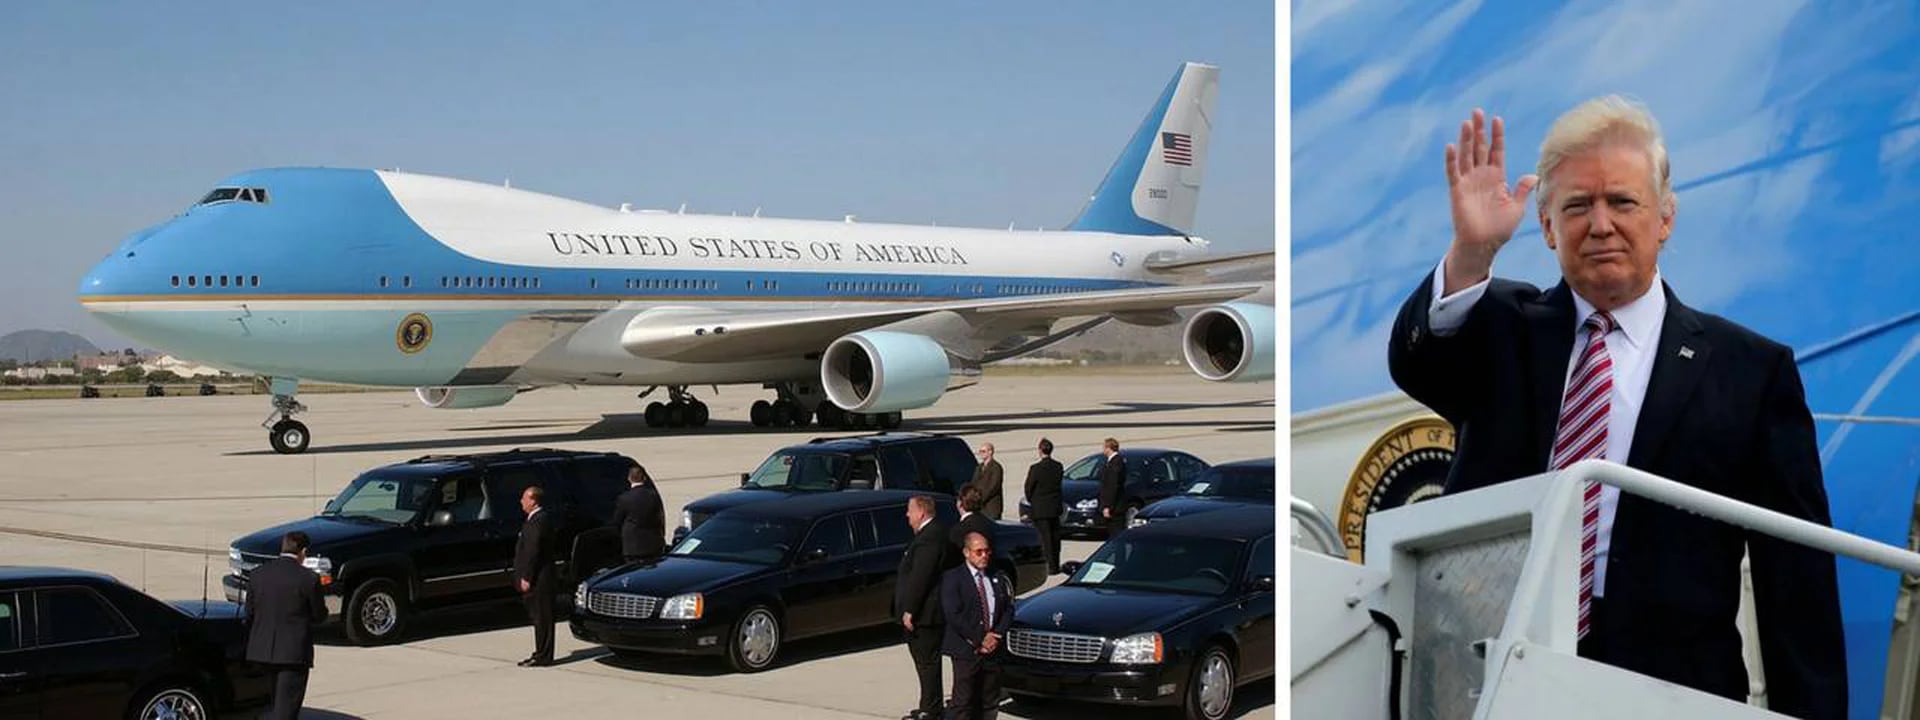 El Boeing 747 Air Force One de Donald Trump, presidente de los Estados Unidos